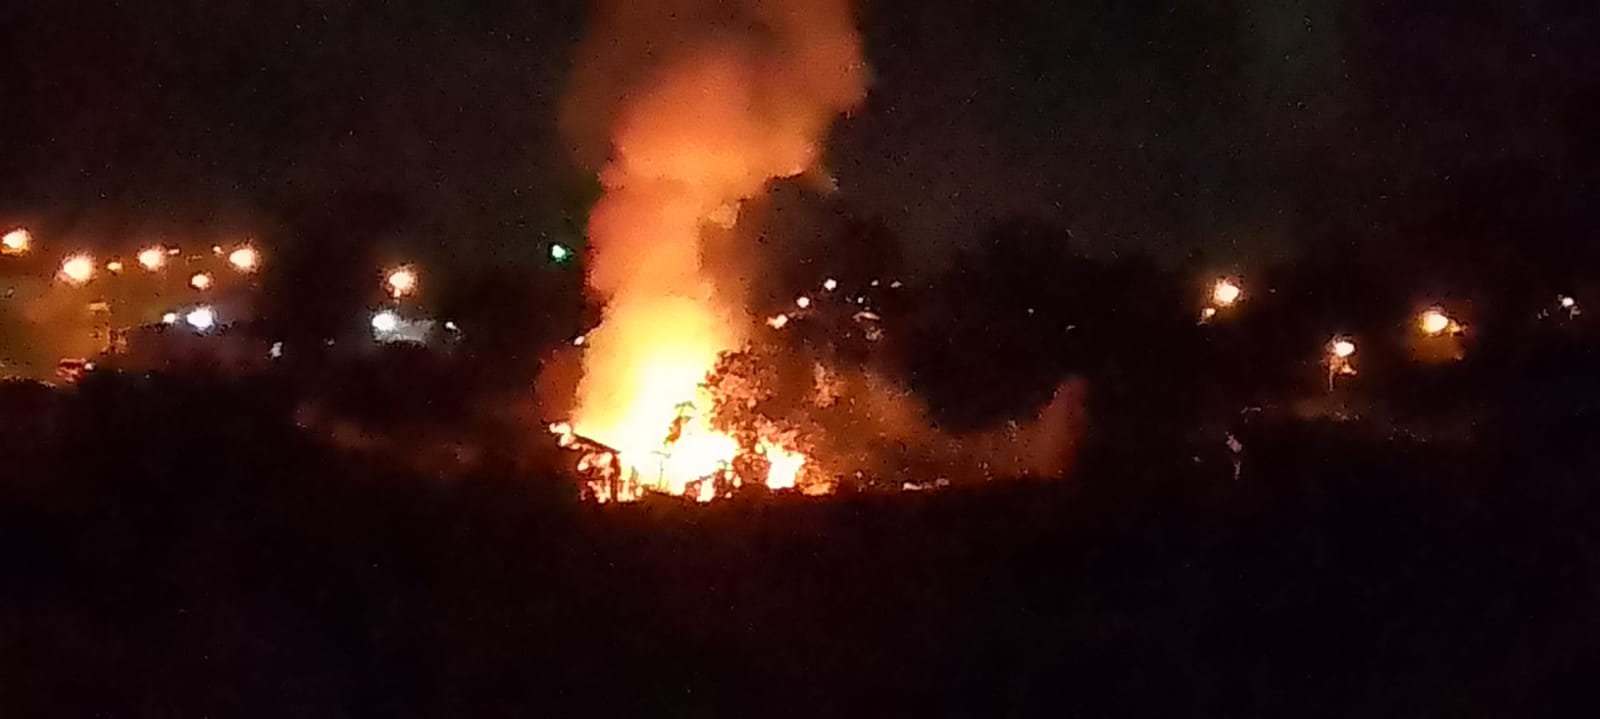 URGENTE: Duas pessoas morrem em incêndio em residência na região de Uvaranas, em PG